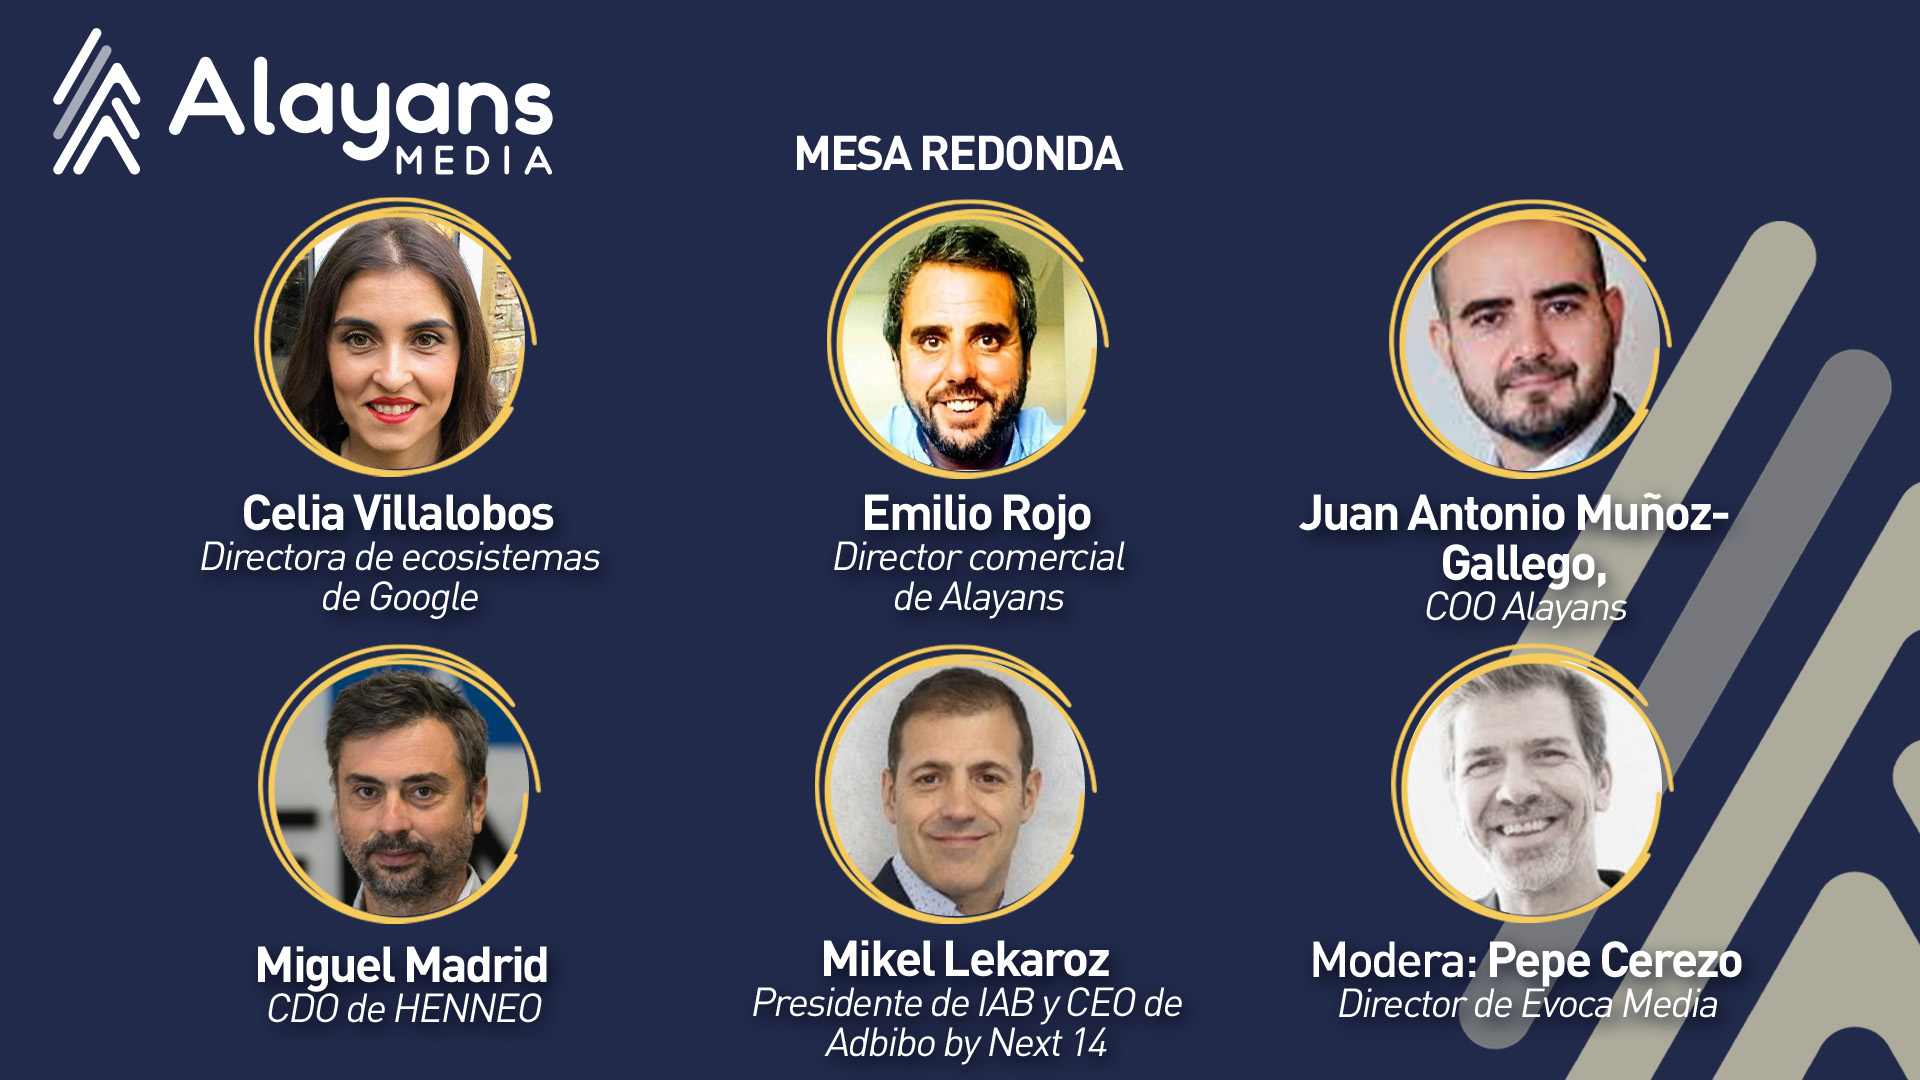 Presentamos Alayans Media en un evento exclusivo en Madrid